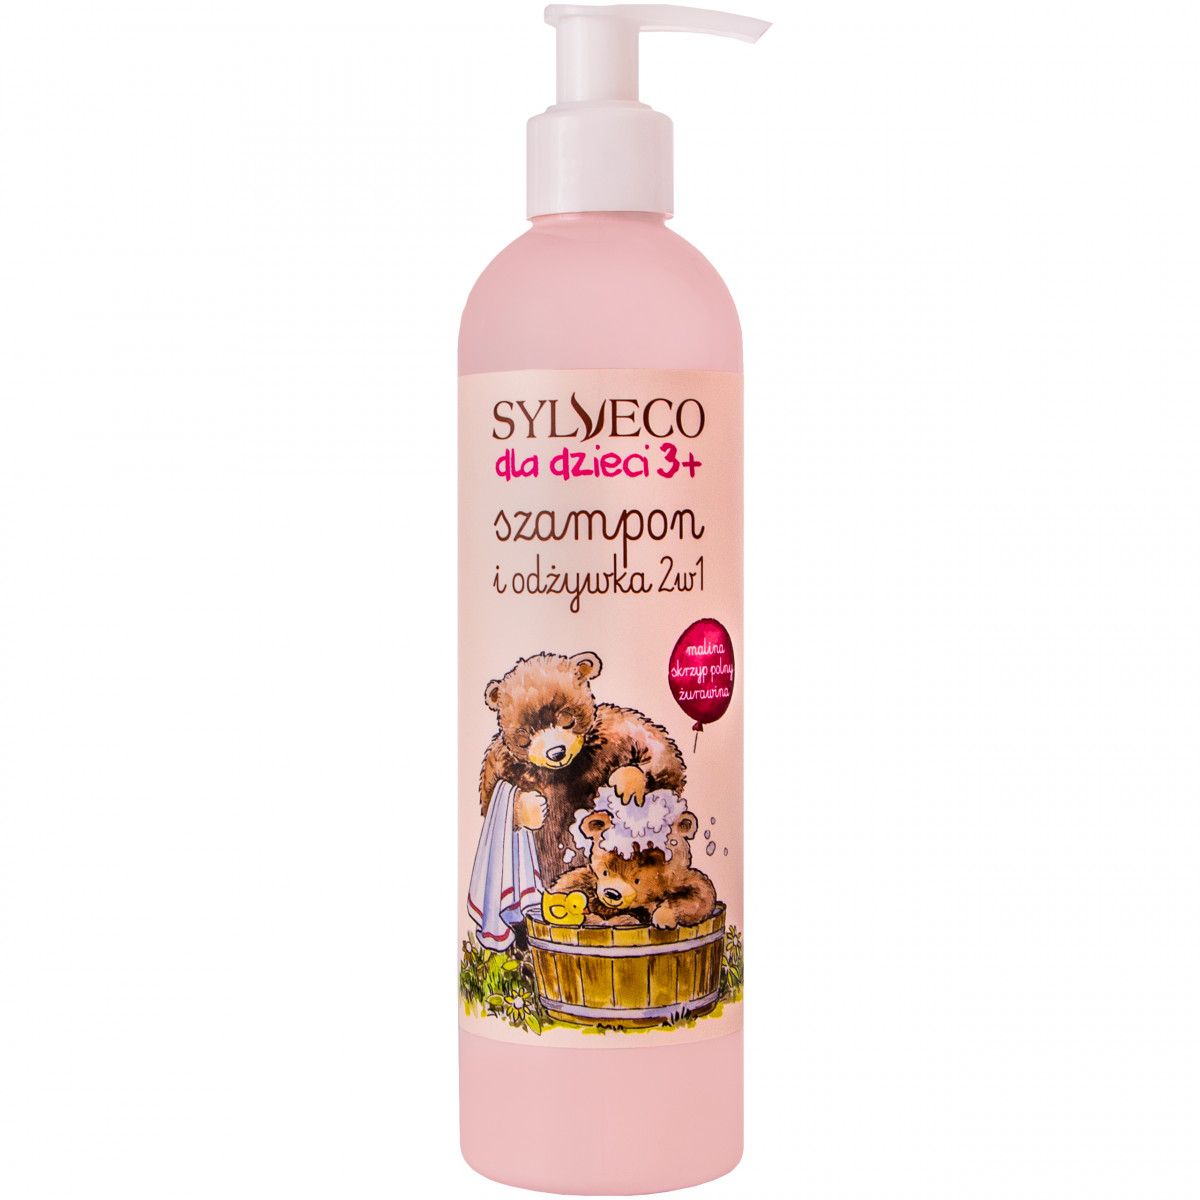 szampon z odzywką dla dzieci